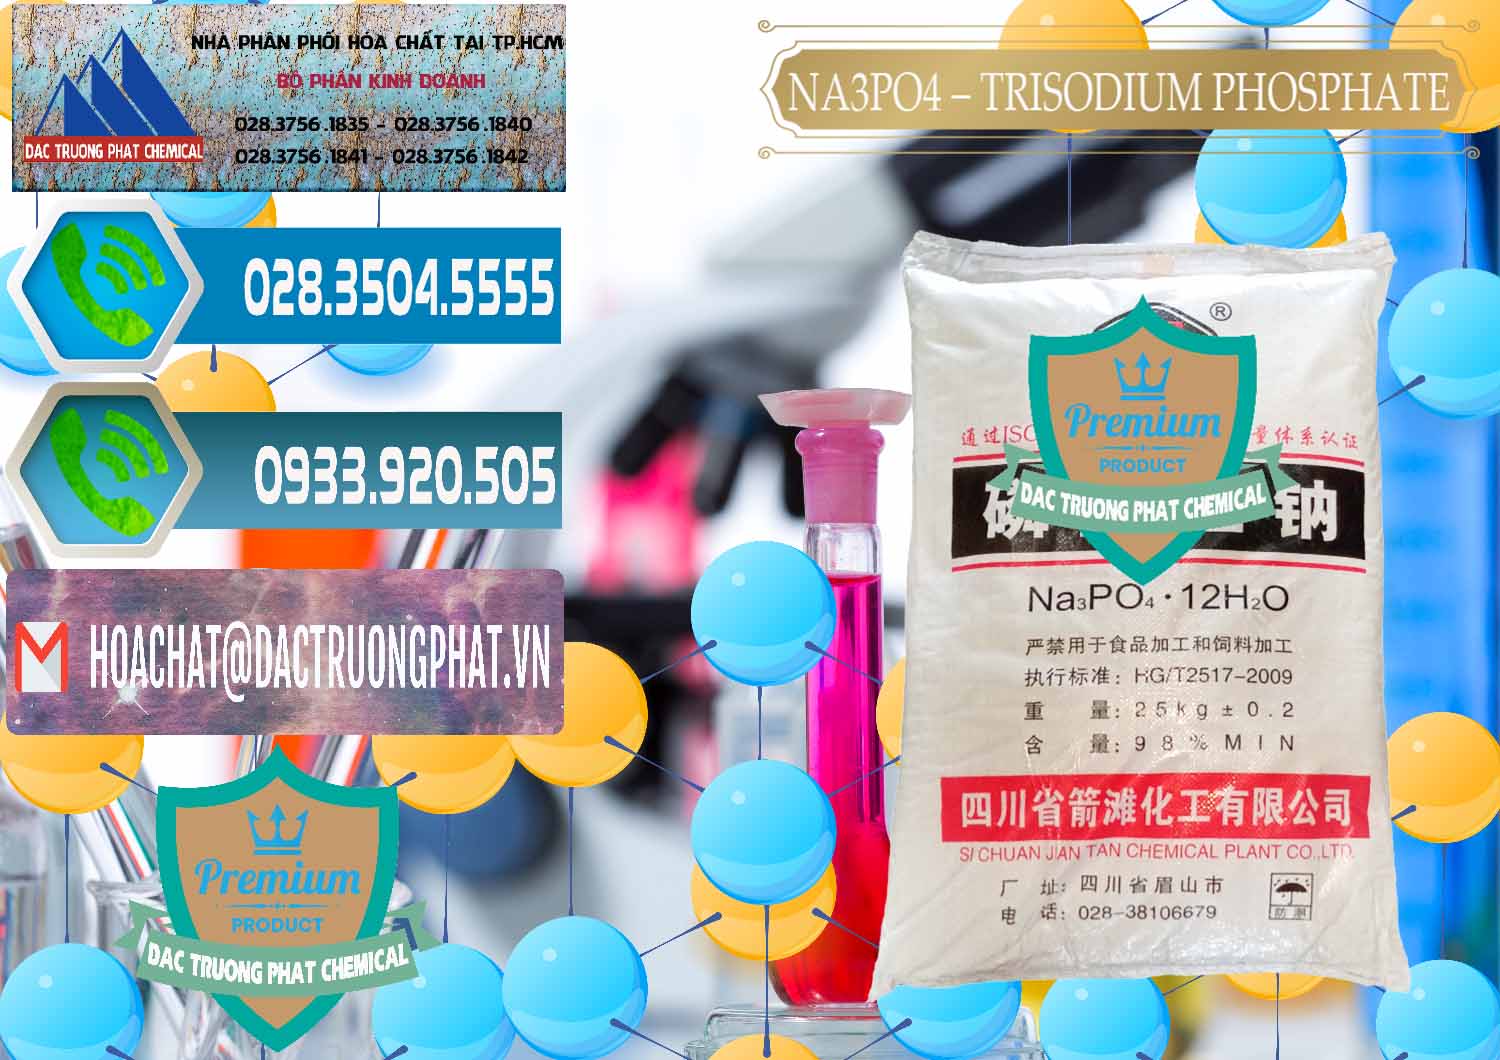 Chuyên kinh doanh & bán Na3PO4 – Trisodium Phosphate Trung Quốc China JT - 0102 - Chuyên nhập khẩu - phân phối hóa chất tại TP.HCM - congtyhoachat.net